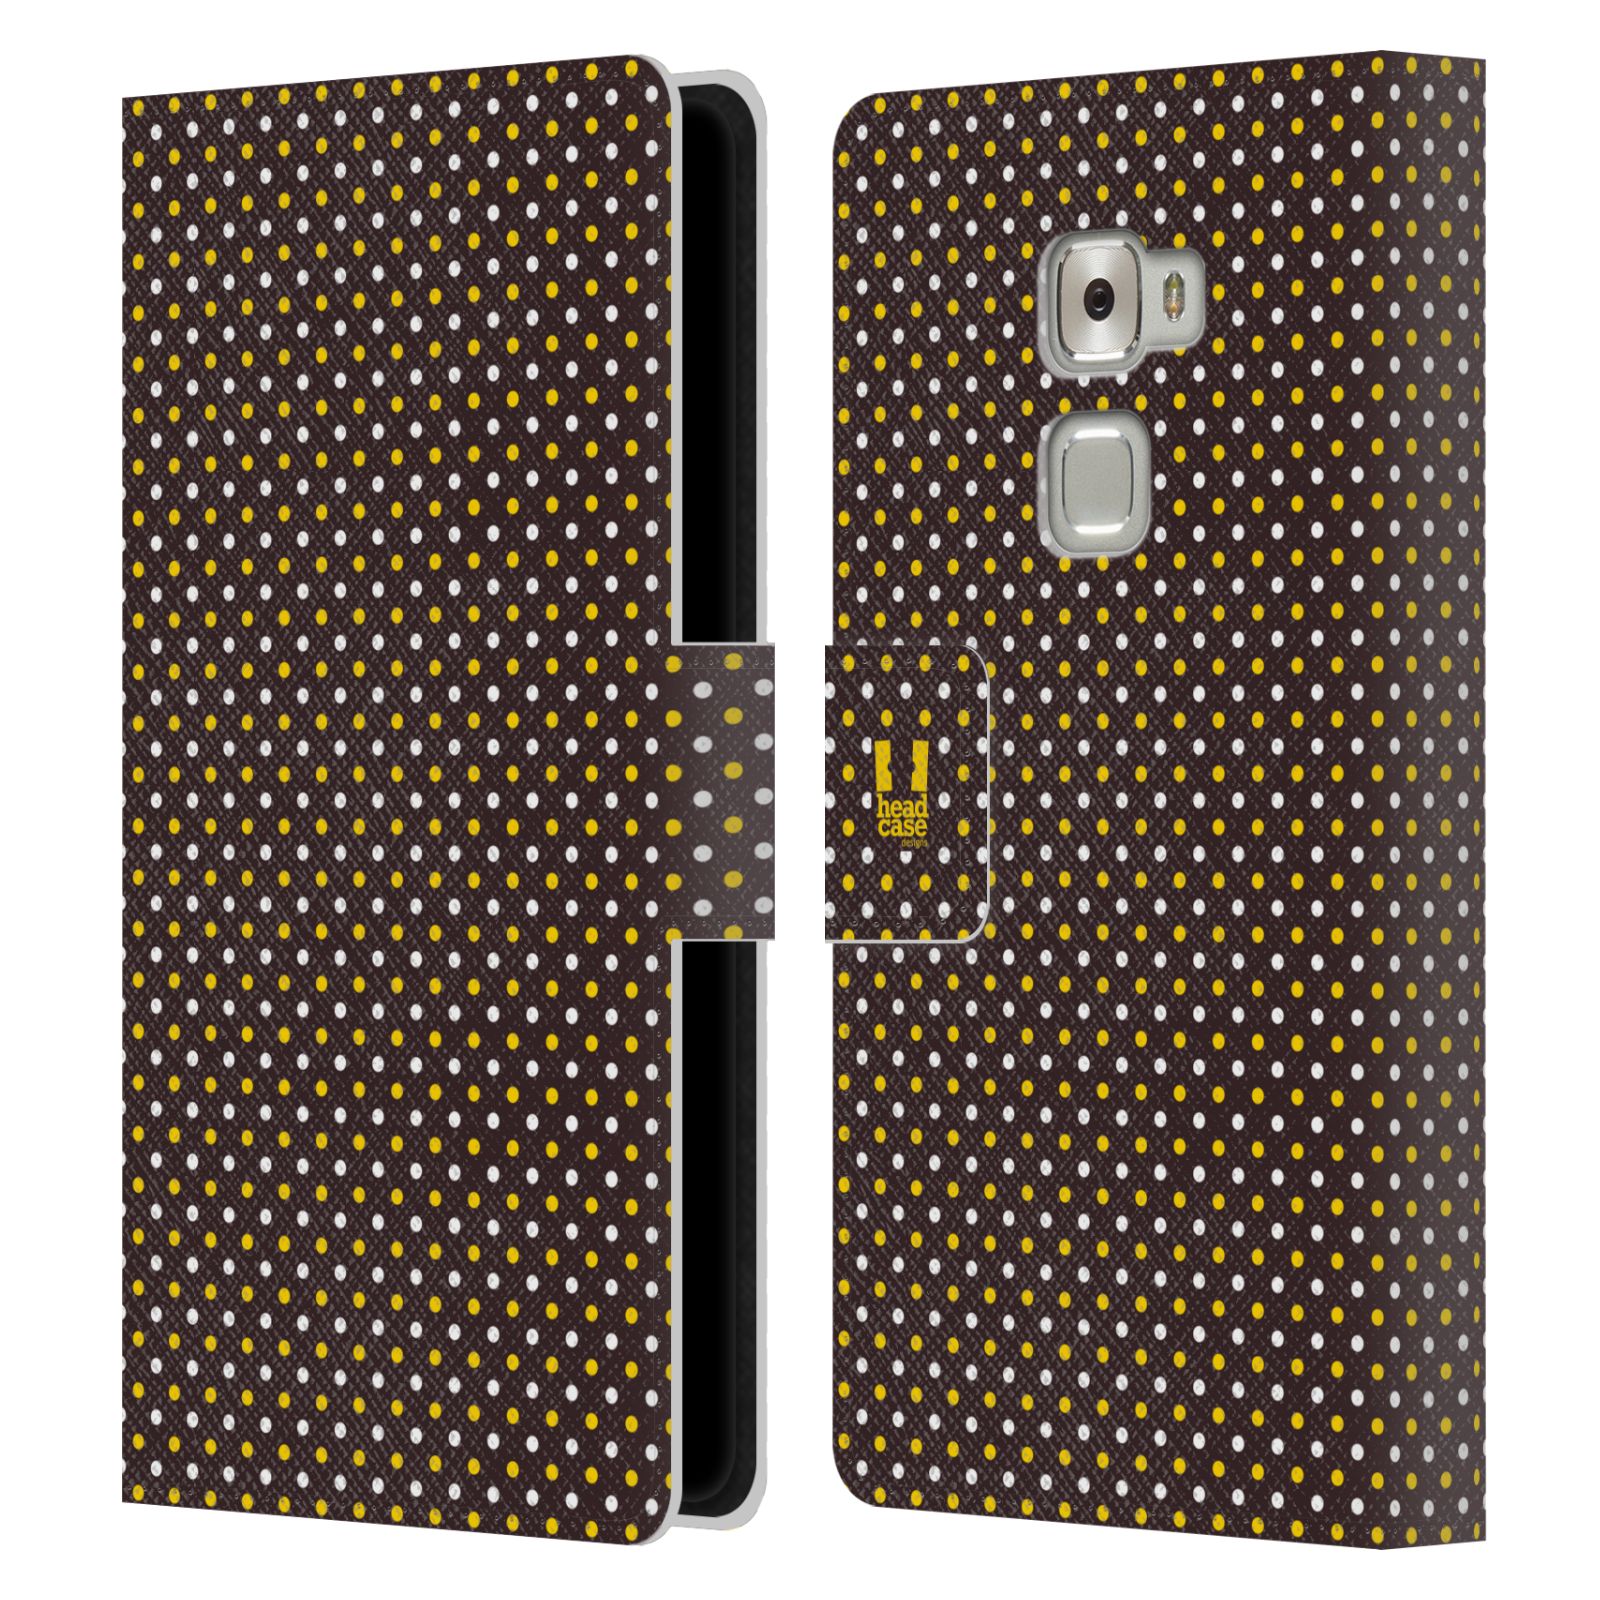 HEAD CASE Flipové pouzdro pro mobil Huawei MATE S VČELÍ VZOR puntíky hnědá a žlutá